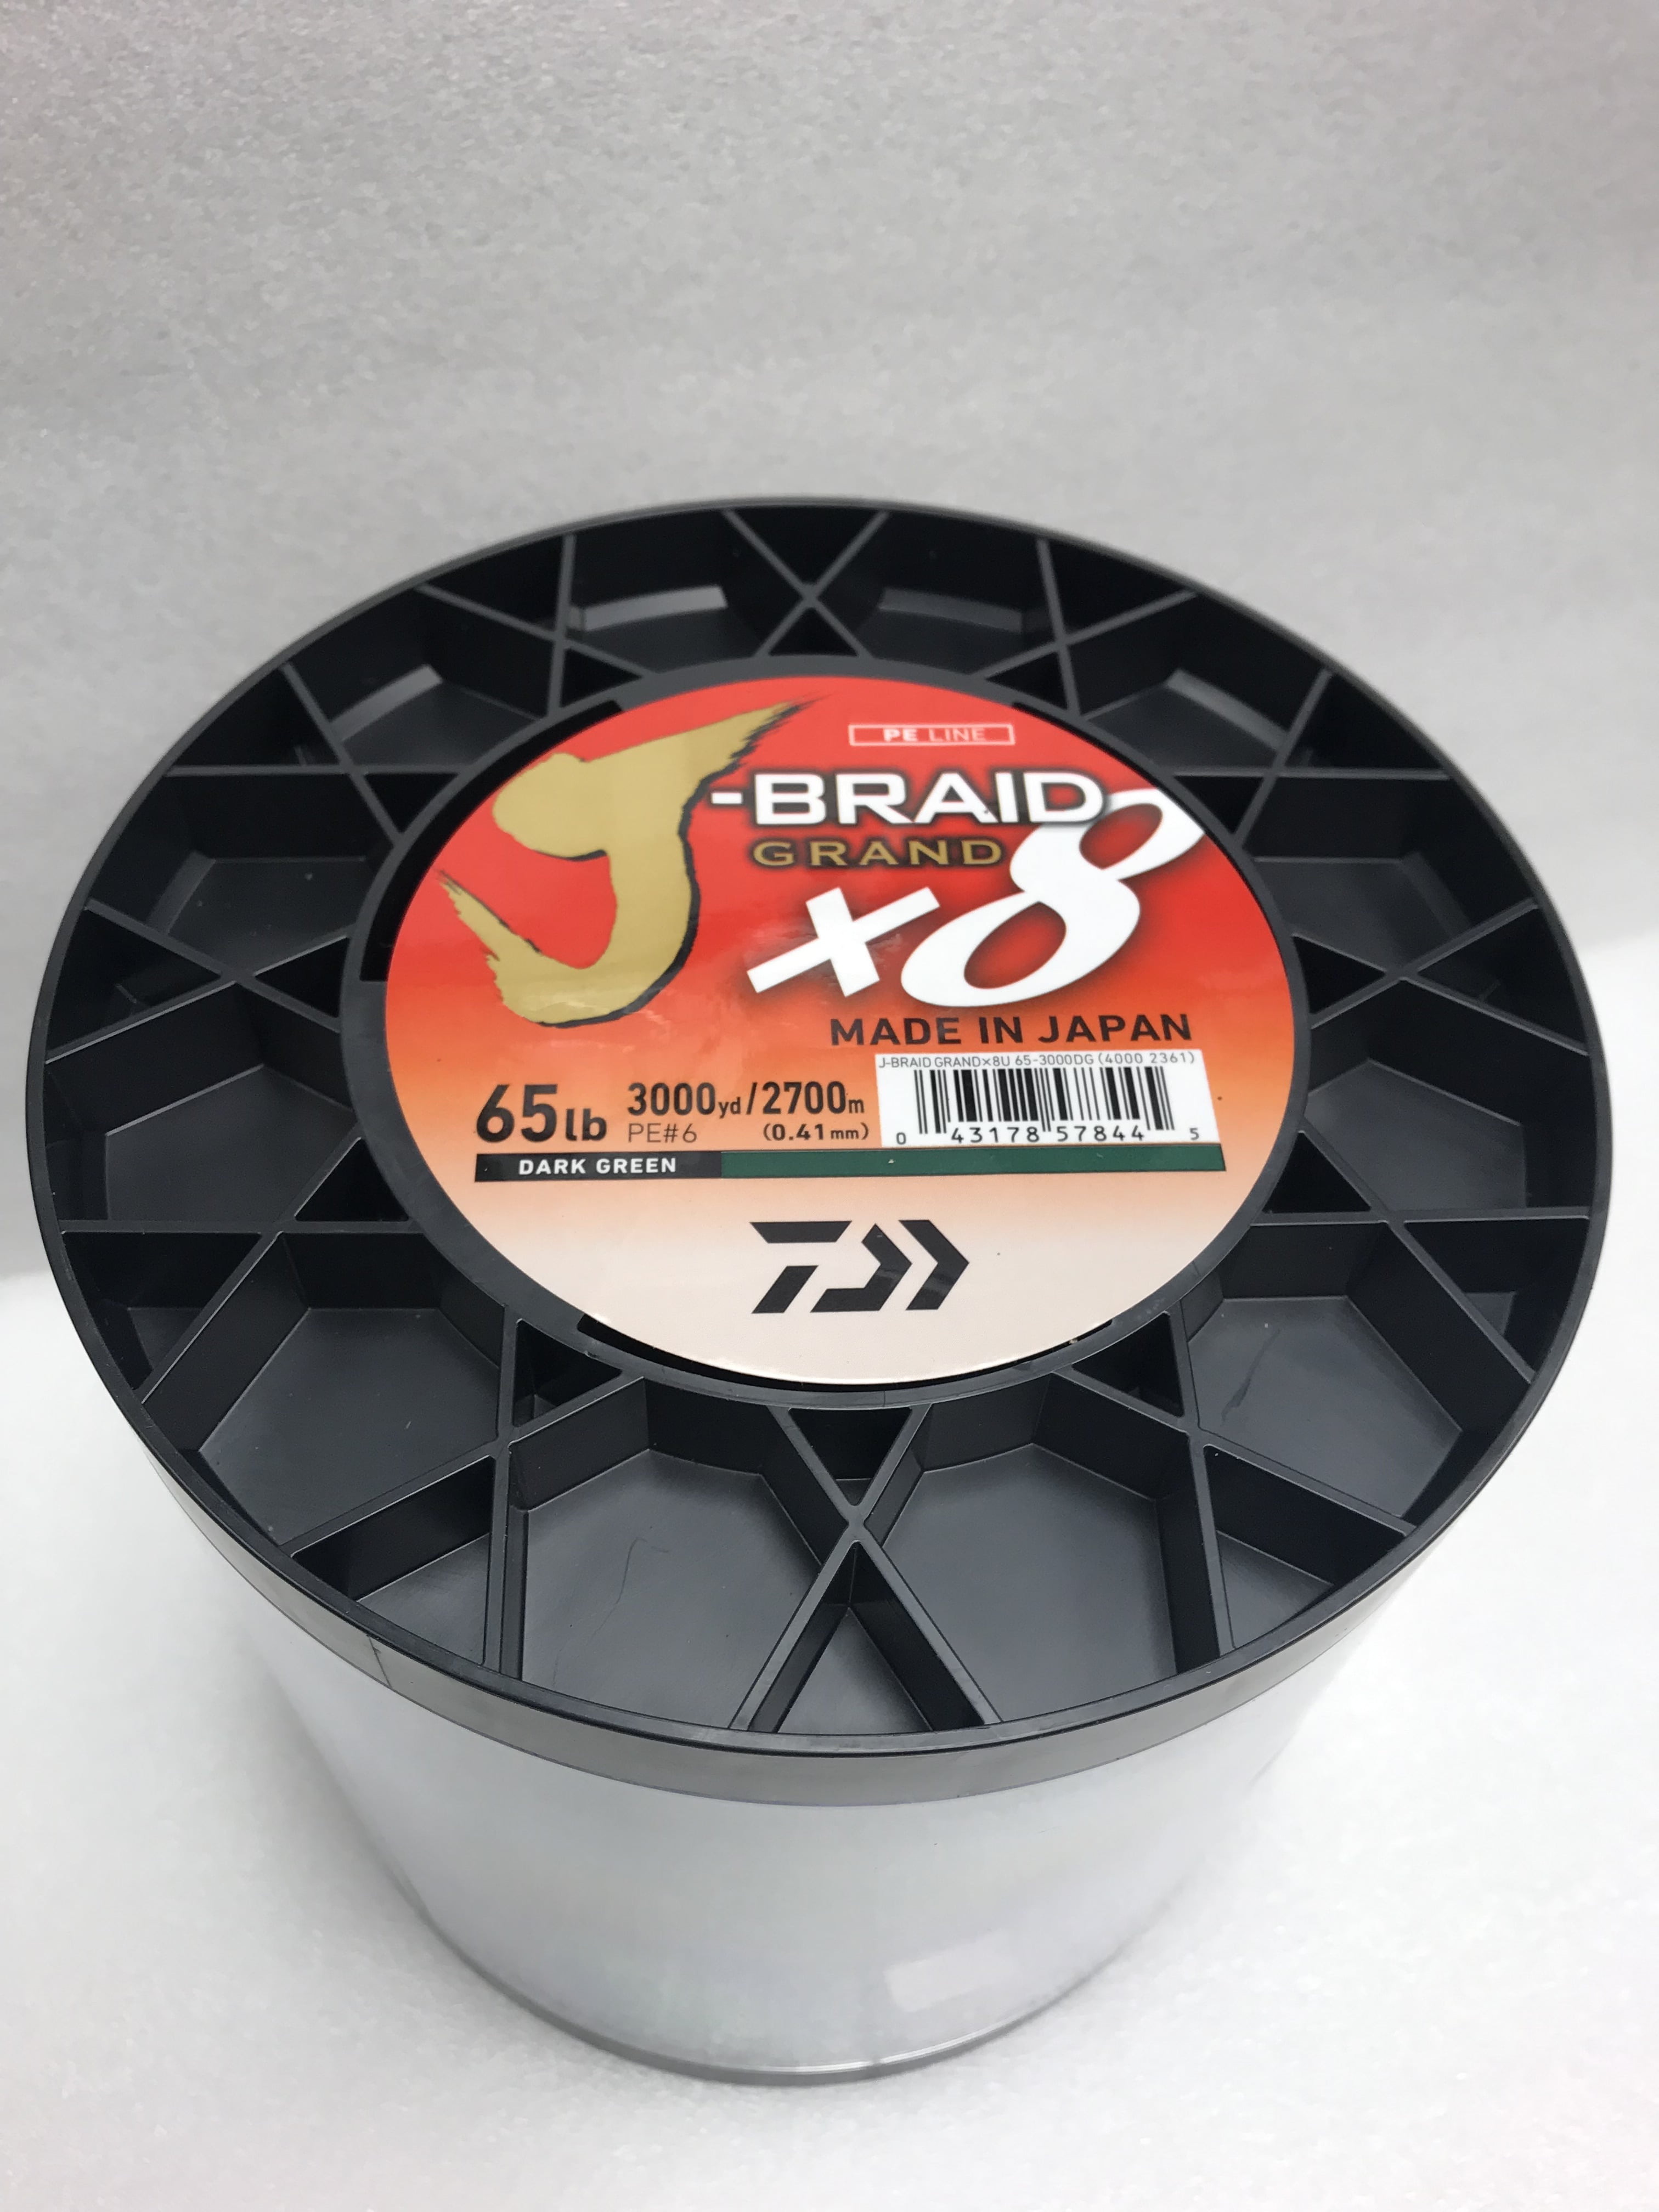 300 Yd. Dark Green Daiwa J-Braid X8 Grand Braided Line 